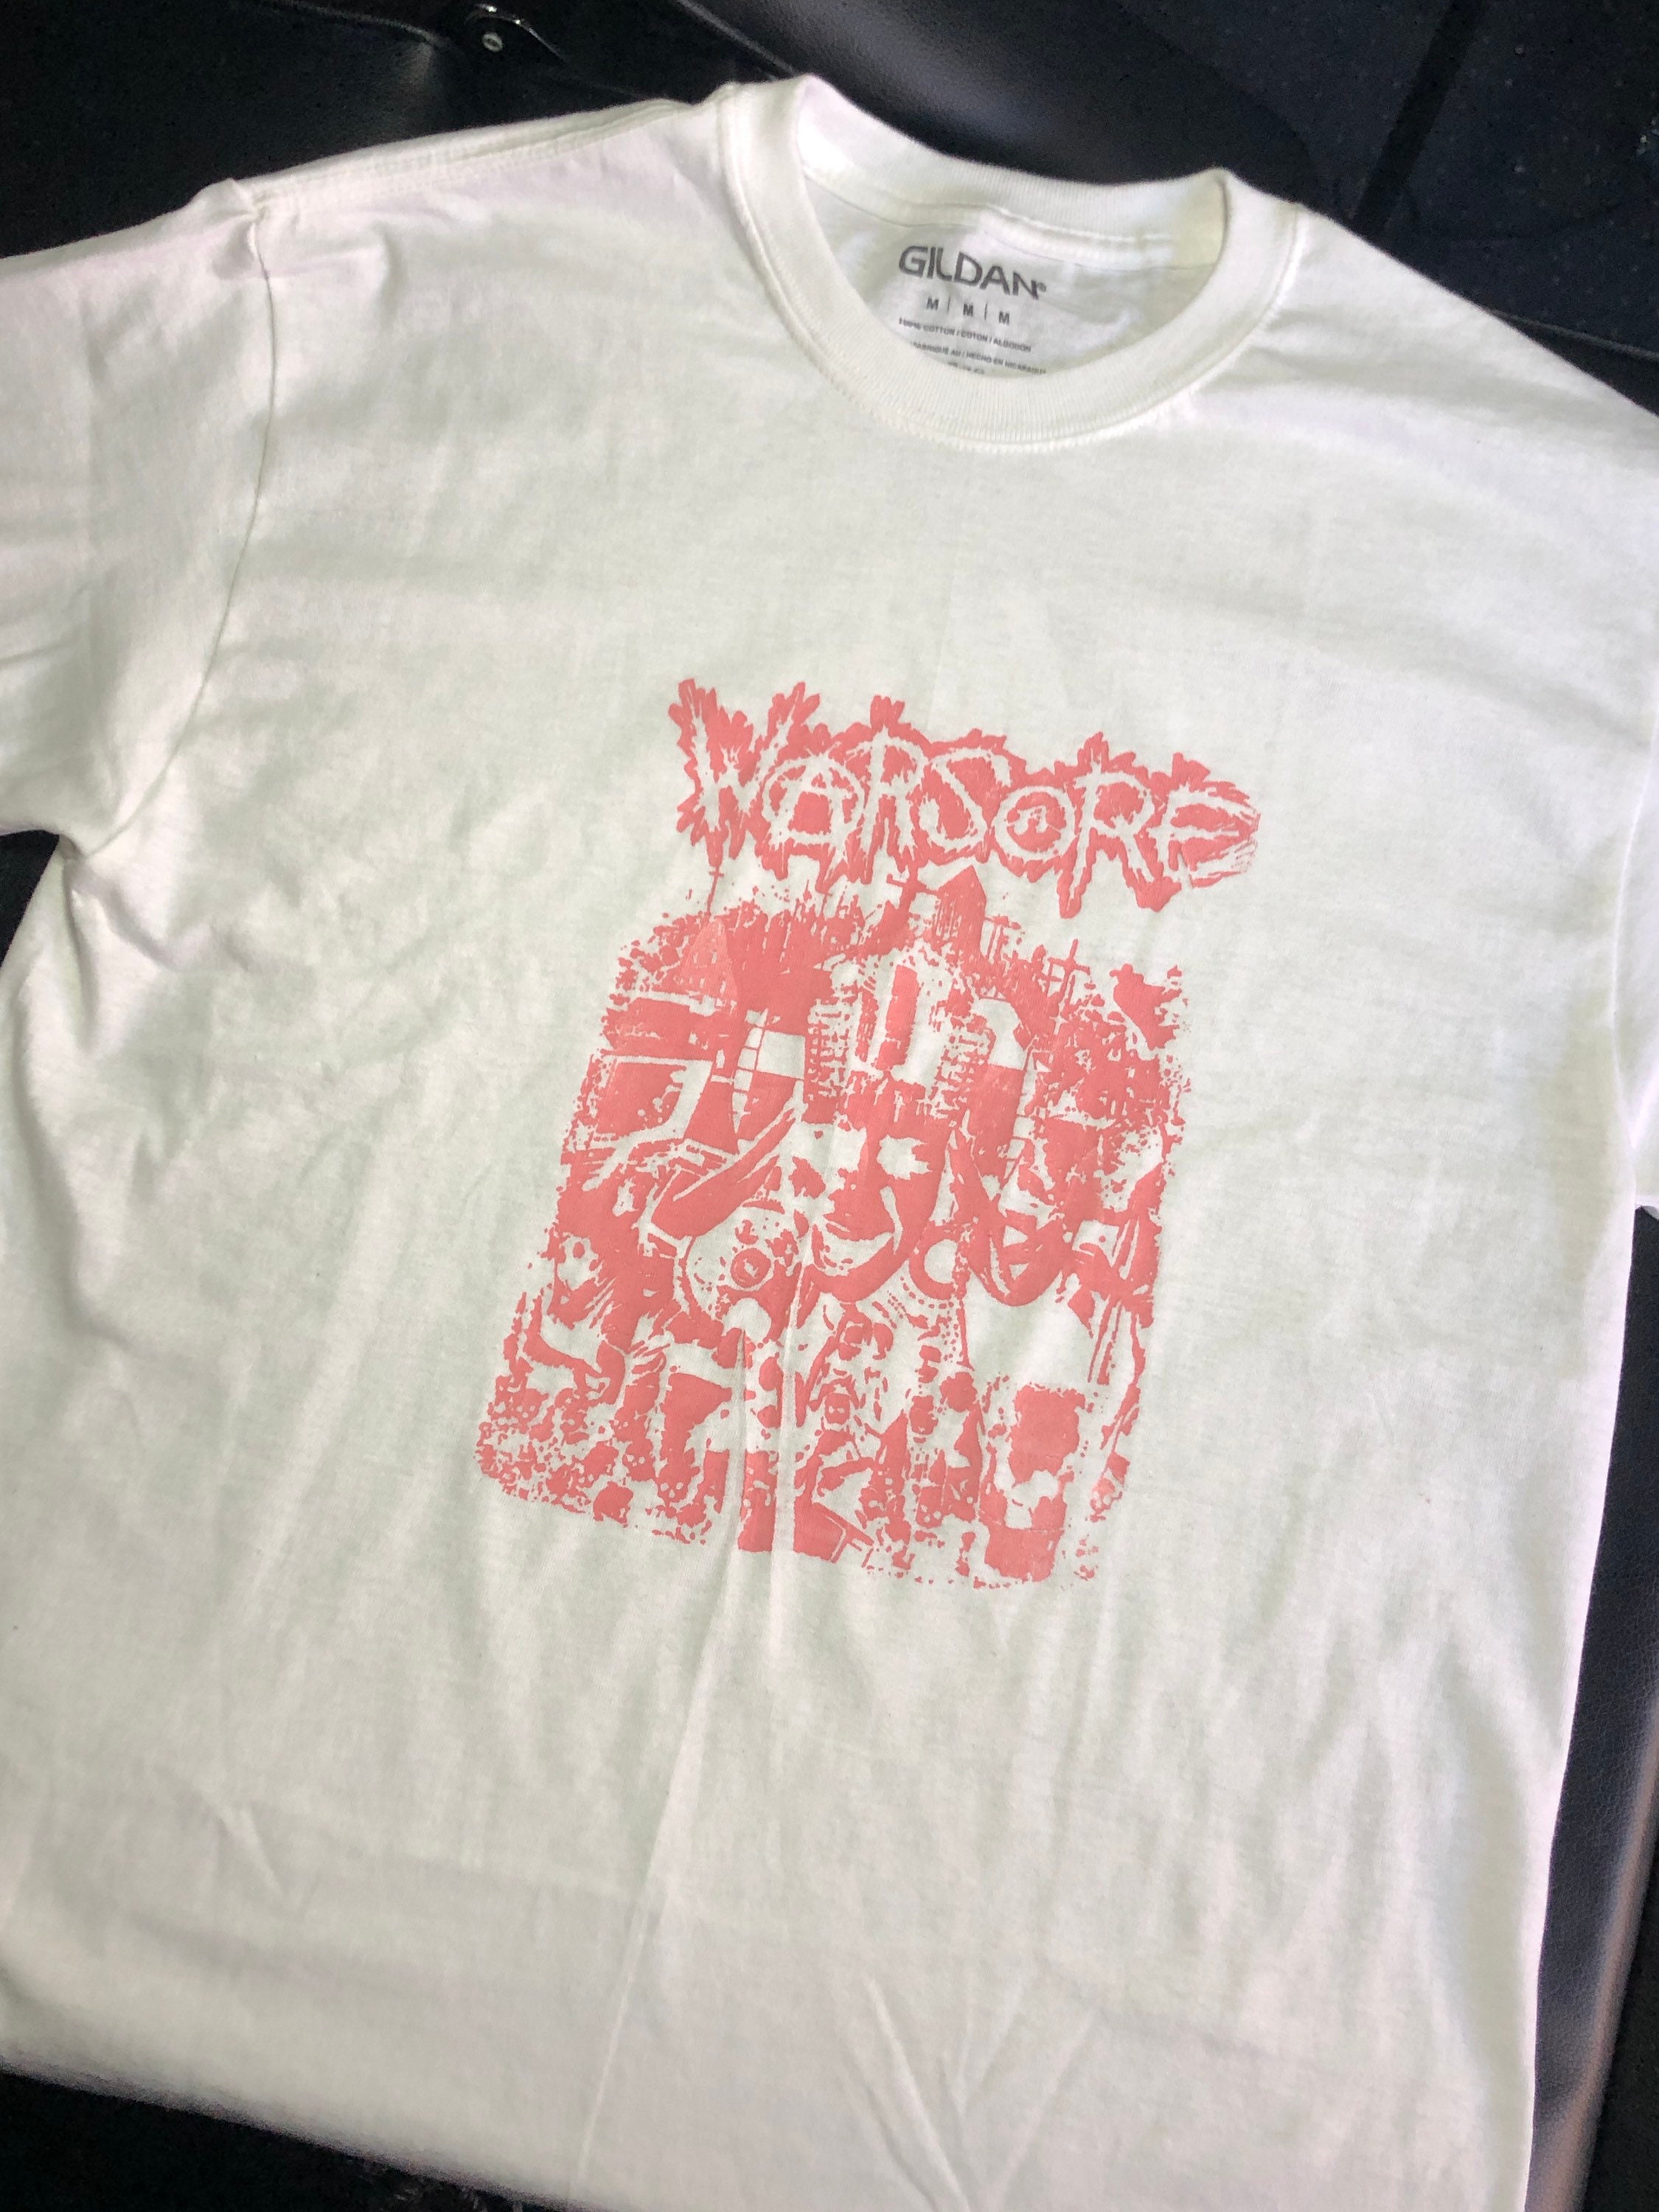 Warsore Logo Tee Pink on White | Etsy